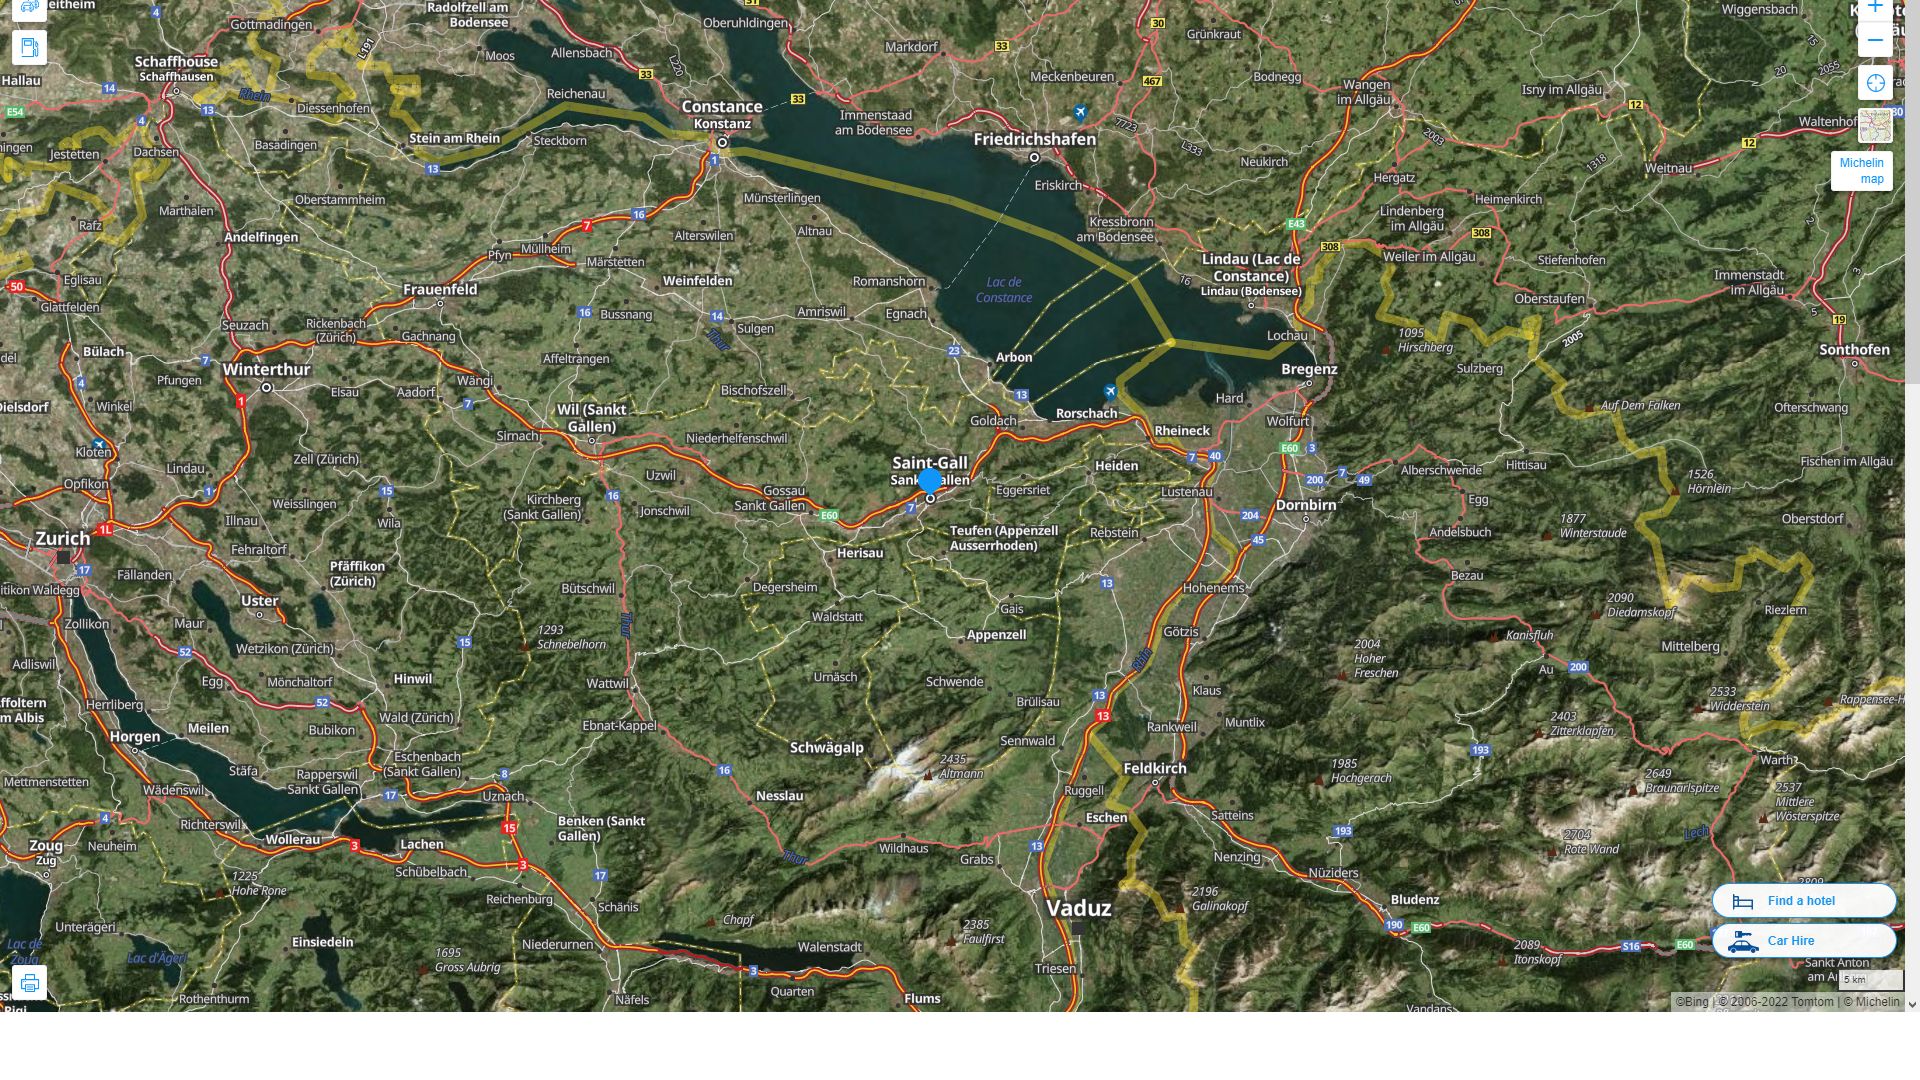 St. Gallen Suisse Autoroute et carte routiere avec vue satellite